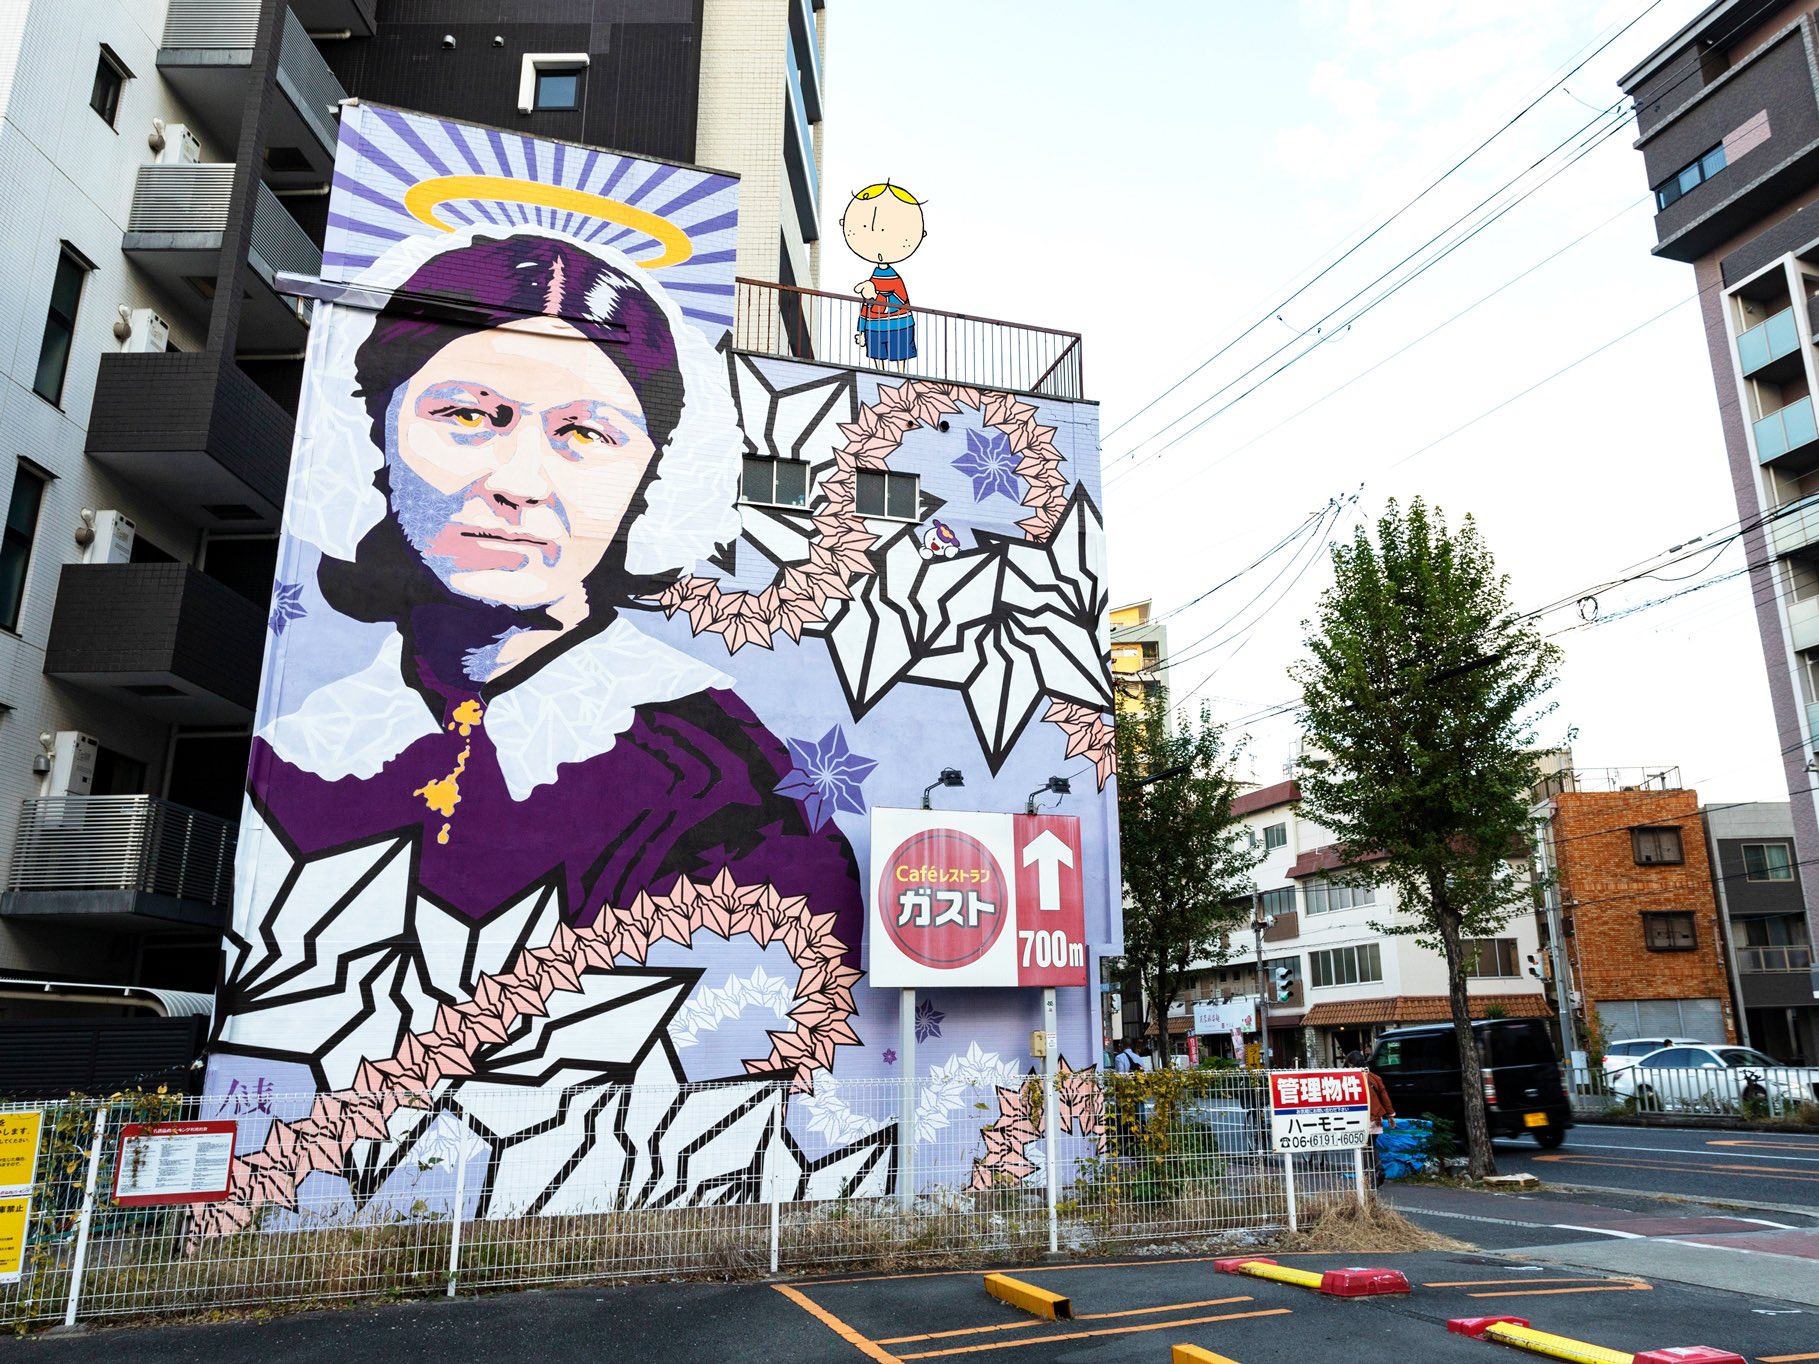 Osakabobファミリー 公式 淀川の近くでアートの壁を発見 社会や街を表現の場として壁画のある街にしたいという思いで発足された 淀壁 よどかべ っていうアートプロジェクトなんやって 色んなアーティストが描いた壁画がいっぱいあって